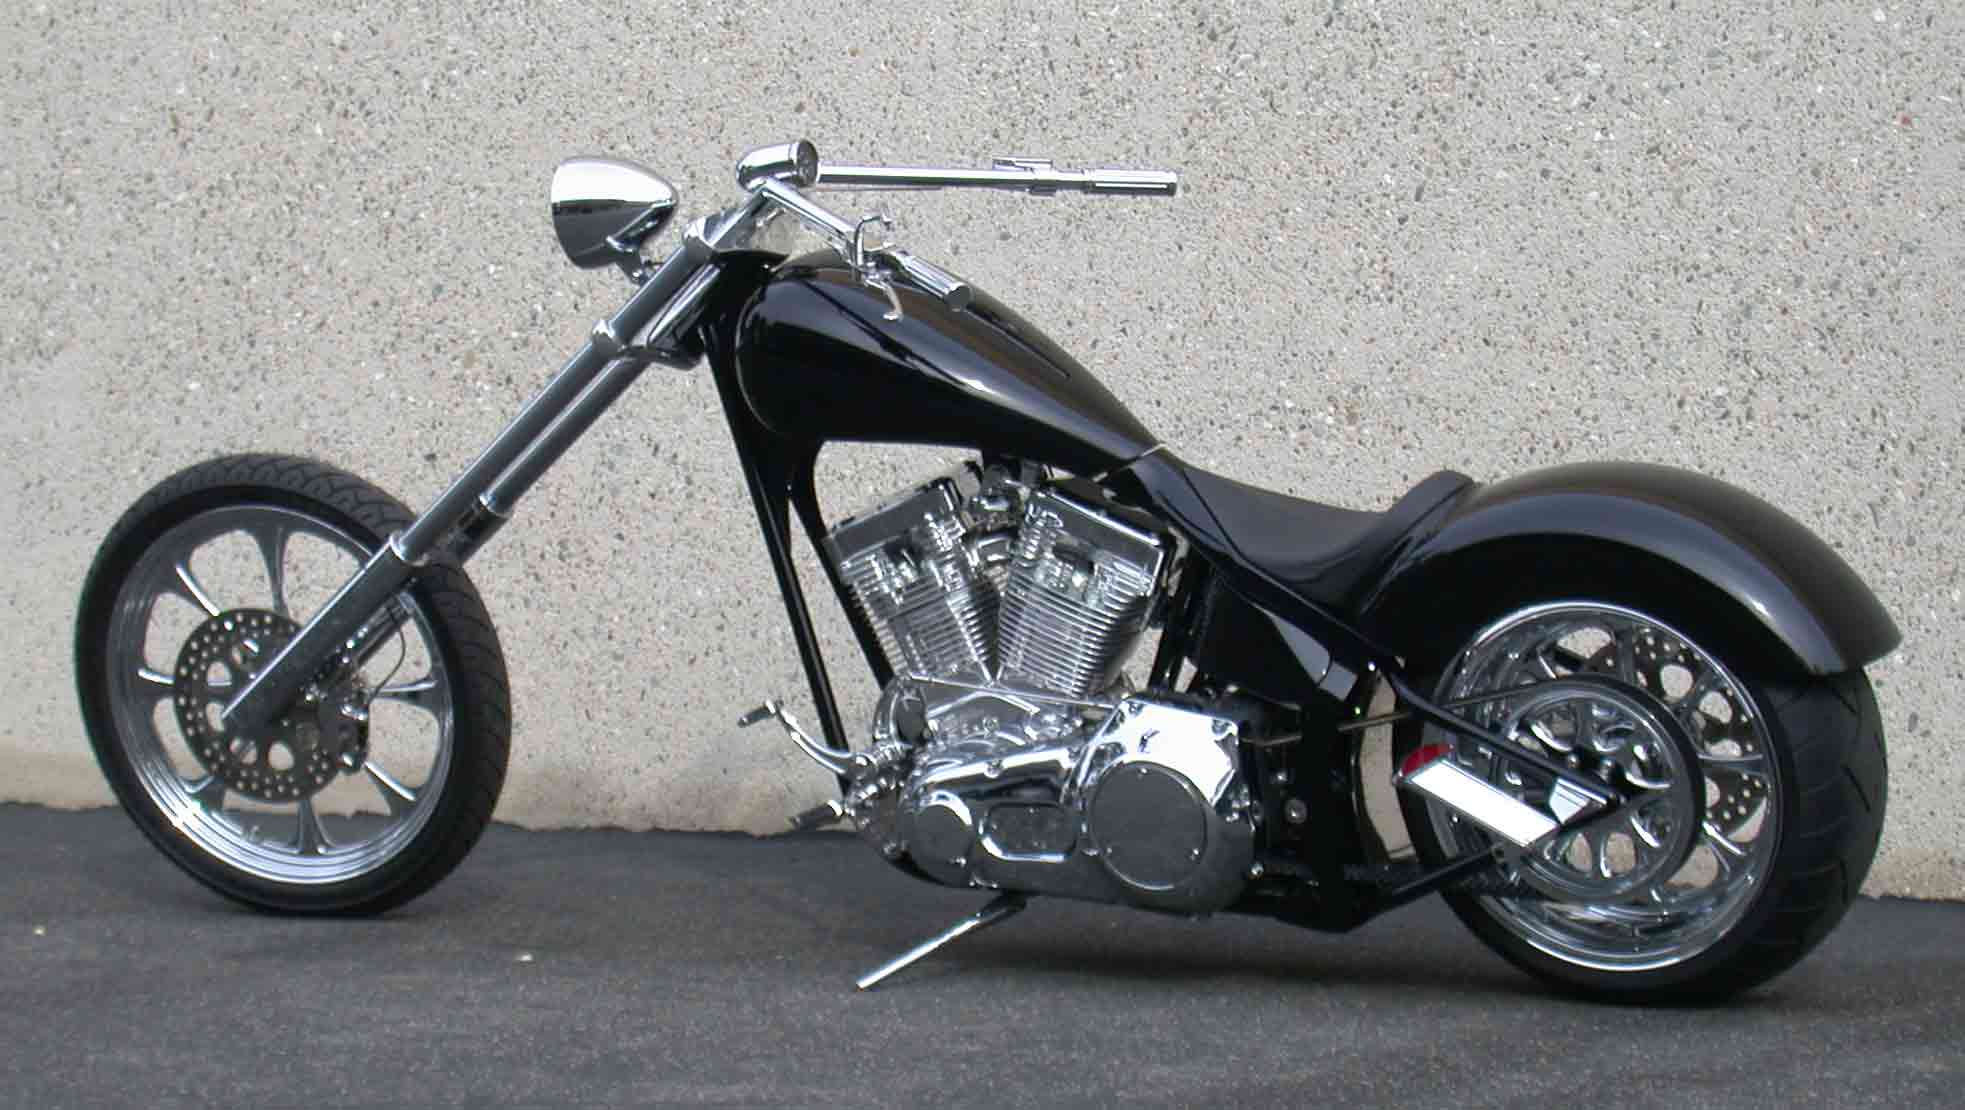  Custom Black Motorcycle 